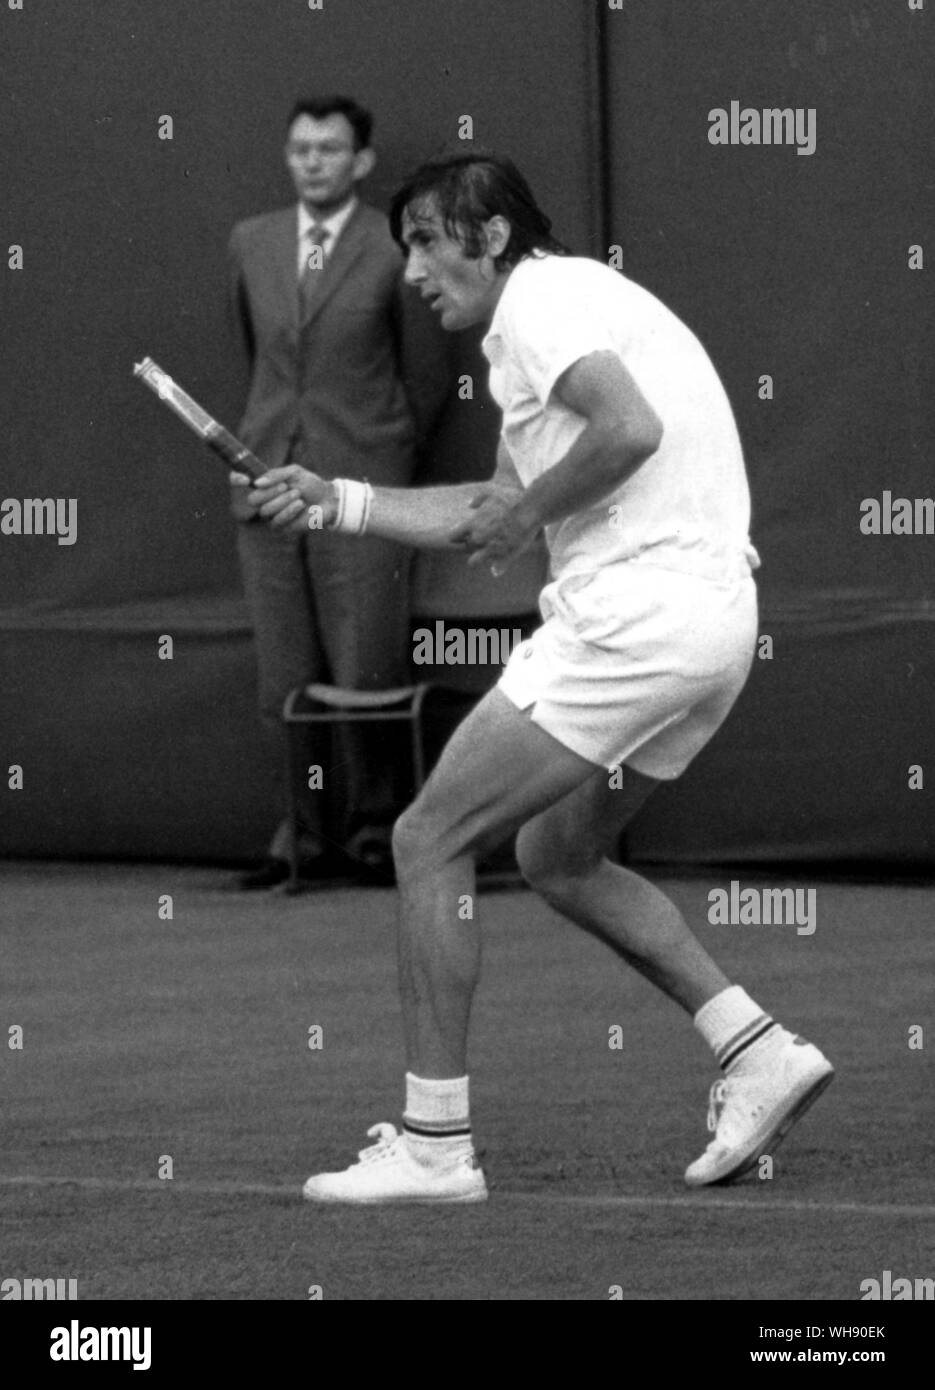 Un lucky shot - Ile Nastase en un tribunal fuera de Wimbledon 1971, estaba jugando forehand desde la línea de base y la cabeza de la raqueta se rompió en el impacto y voló hacia la red. Nastase, acabado todavía la carrera, ocupa sólo el tallo. Foto de stock